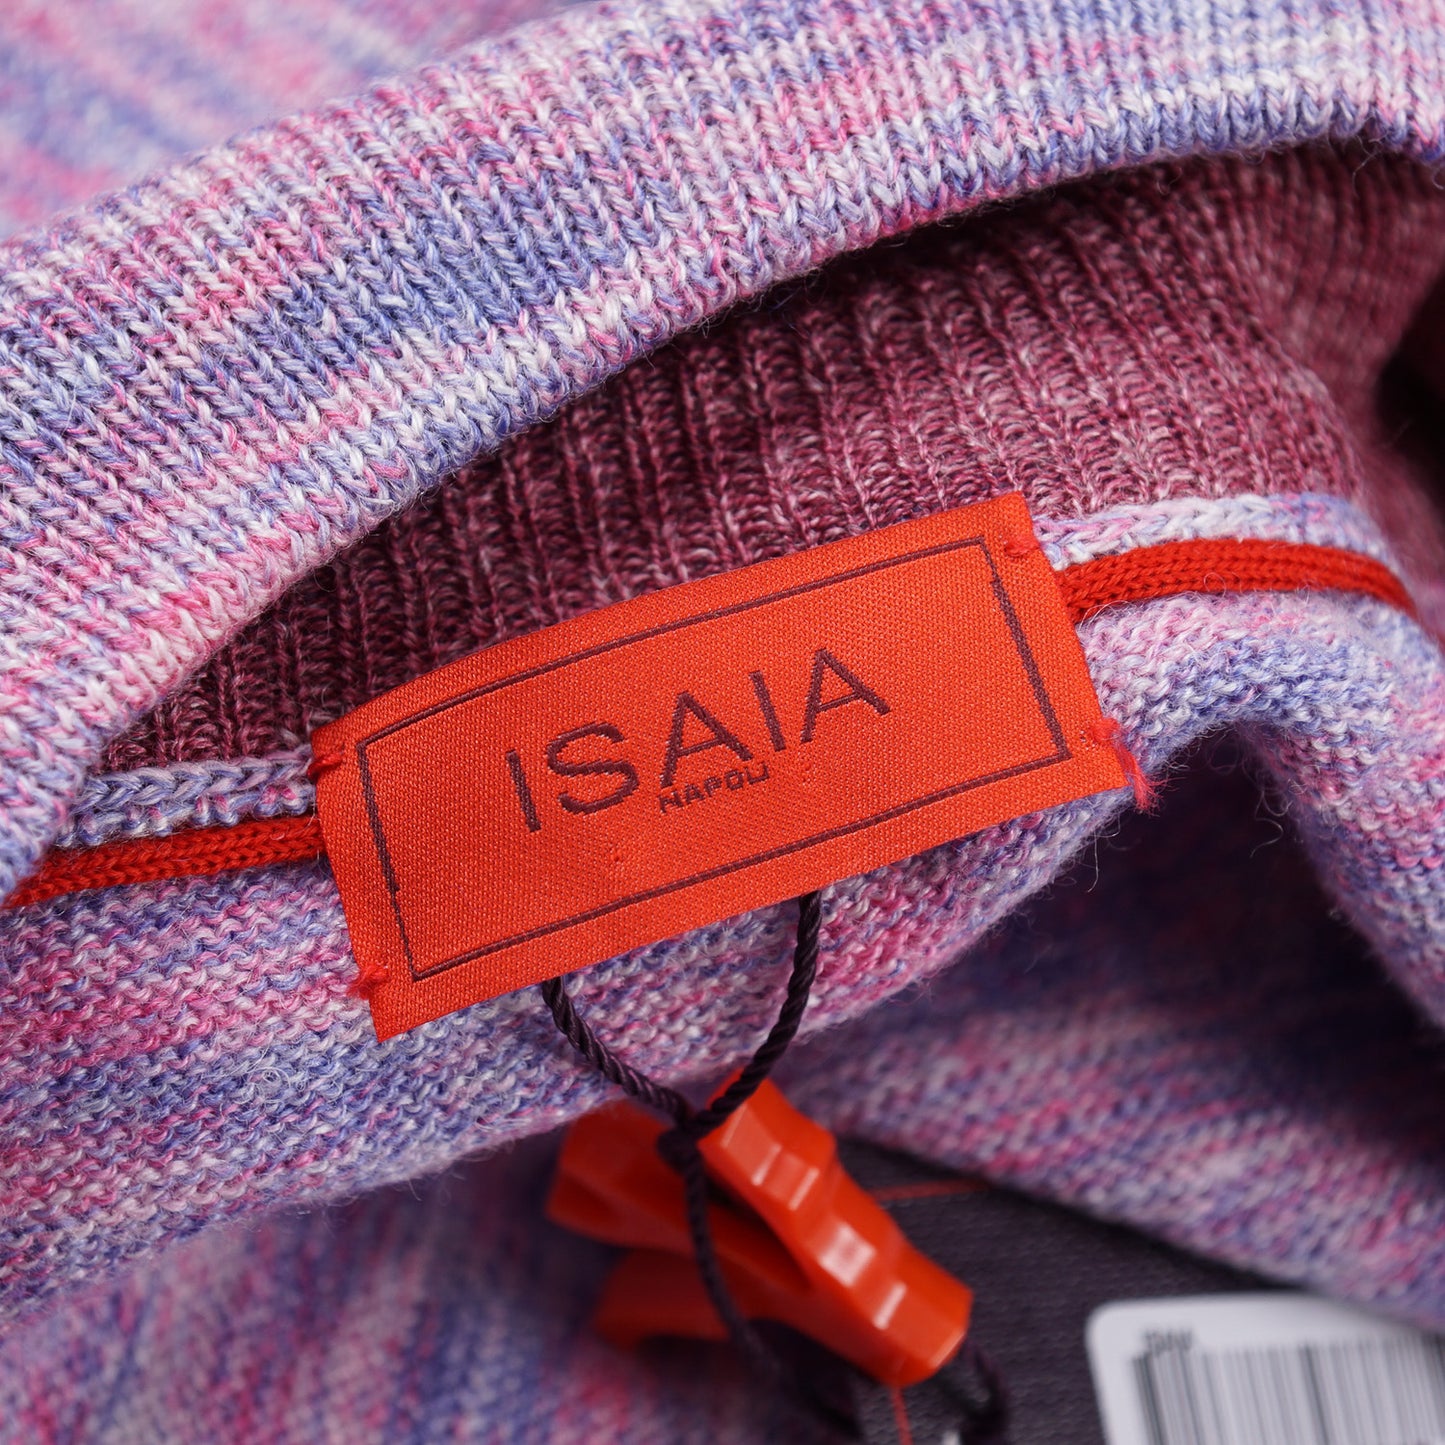 Isaia Full-Zip Wool-Silk-Linen Sweater - Top Shelf Apparel